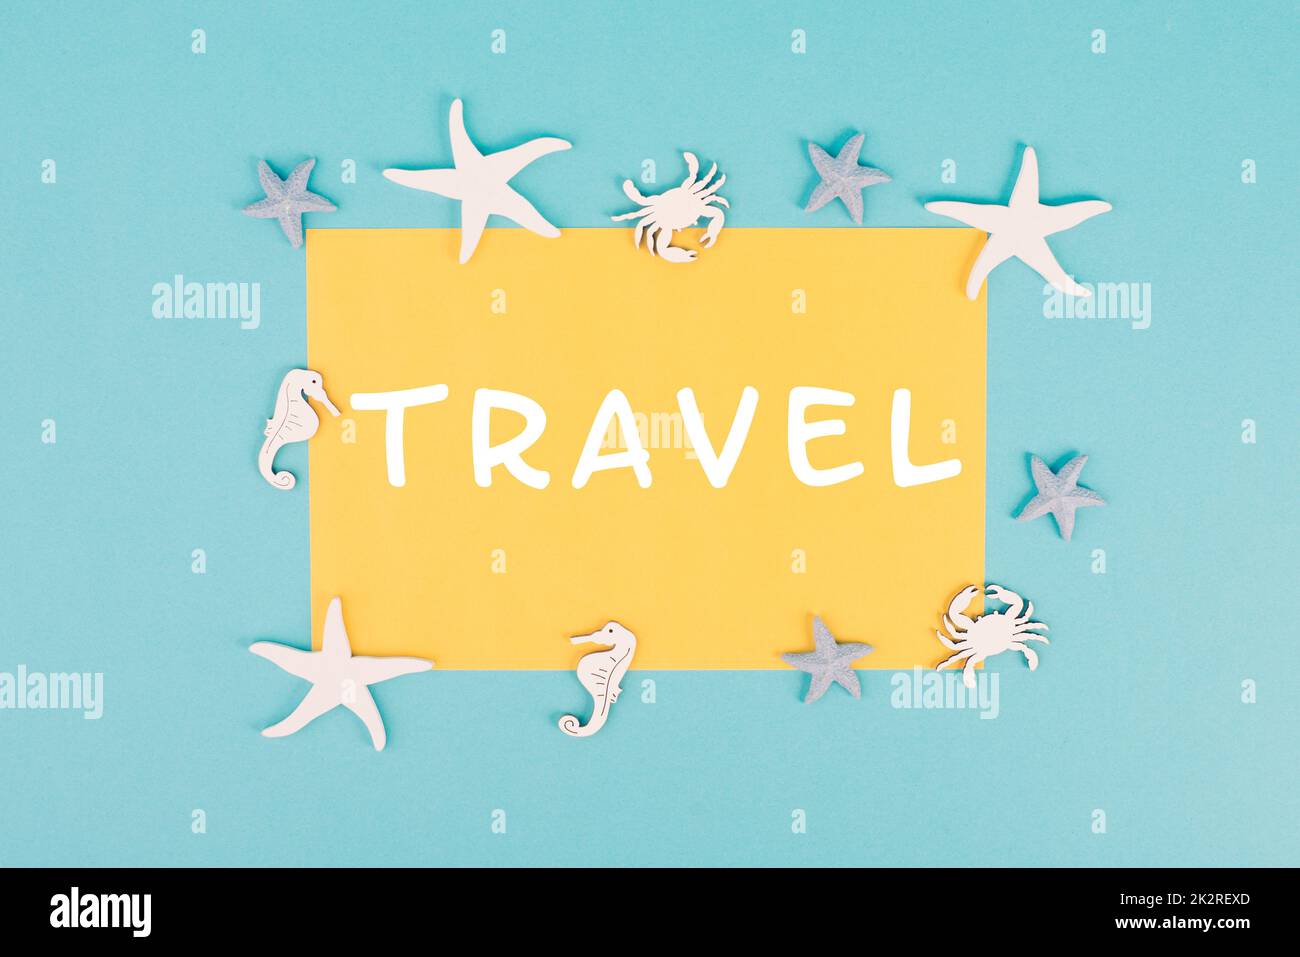 La parola viaggio è in piedi su una carta di colore giallo, stelle del mare, cavallucci marini e granchio che puntano una cornice, vacanze estive, destinazione turistica Foto Stock